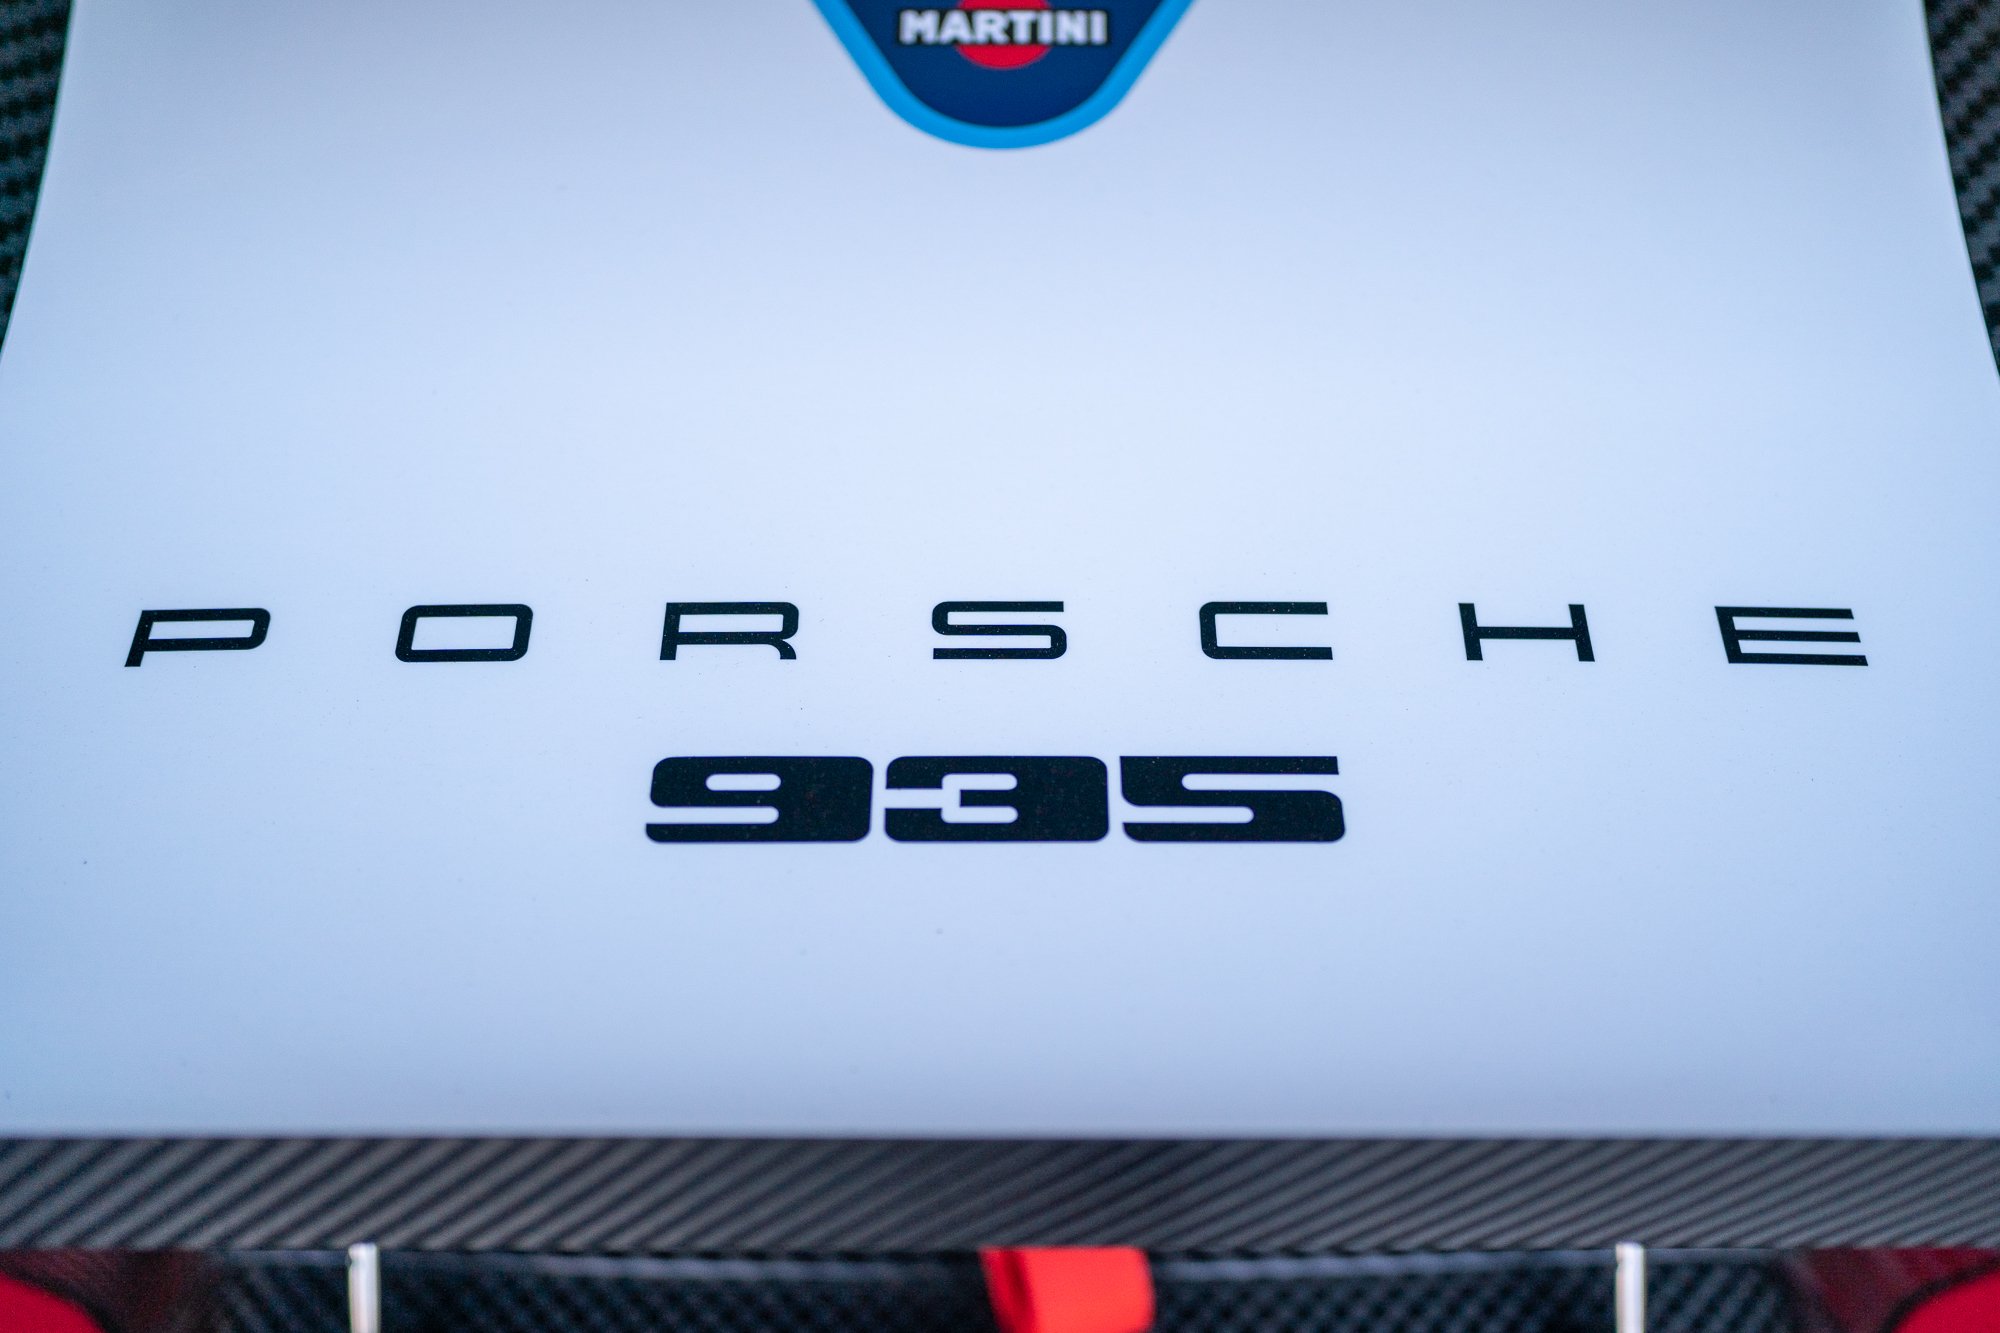 Porsche logo on the rear of a 2019 935